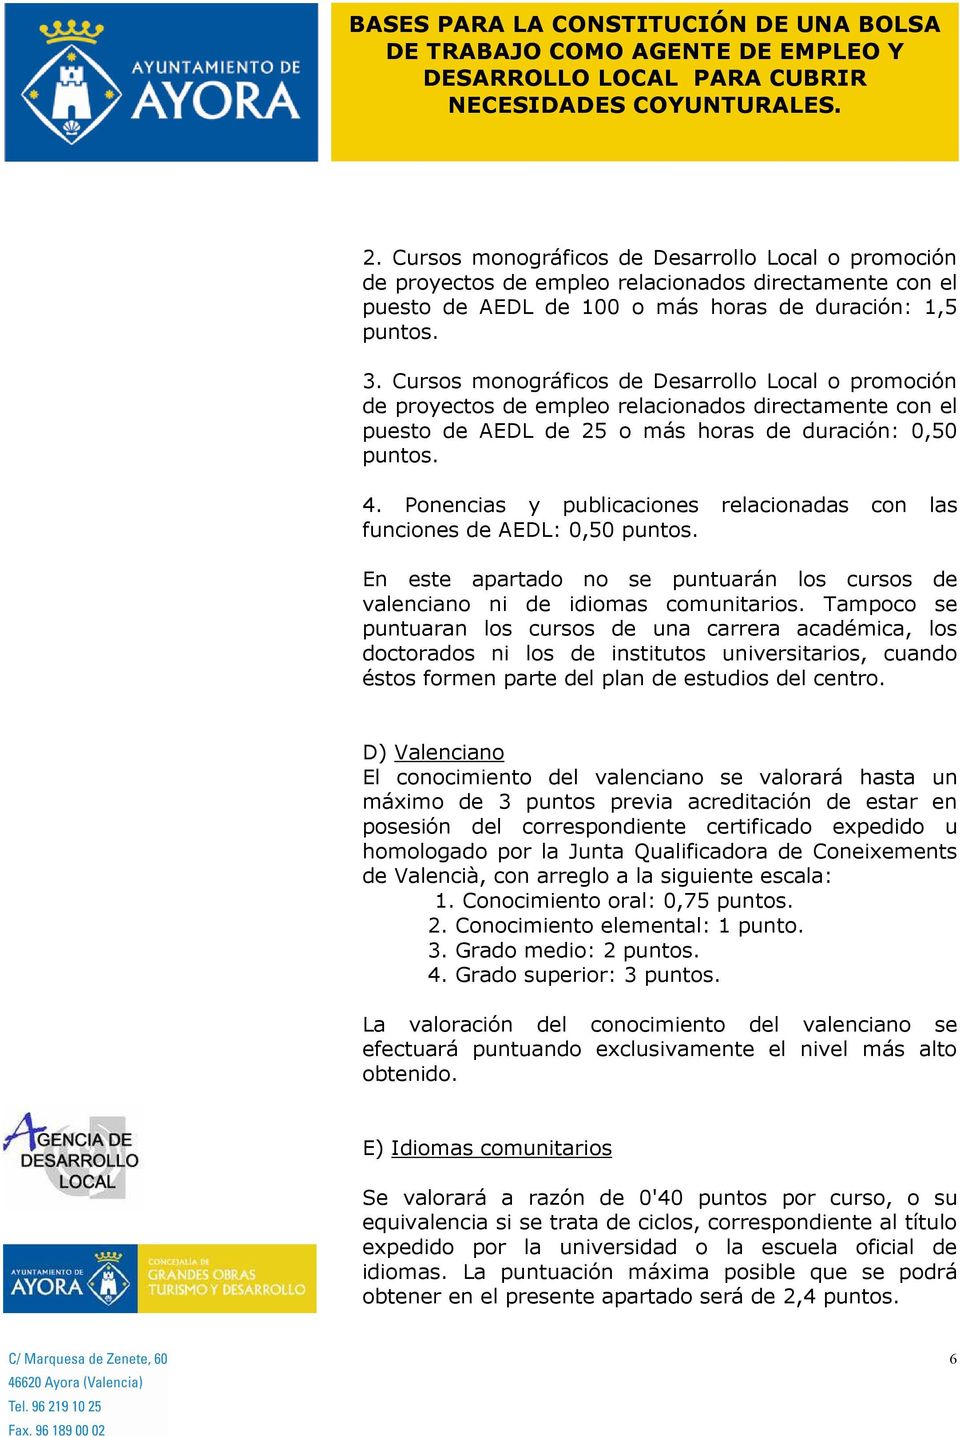 Ponencias y publicaciones relacionadas con las funciones de AEDL: 0,50 puntos. En este apartado no se puntuarán los cursos de valenciano ni de idiomas comunitarios.